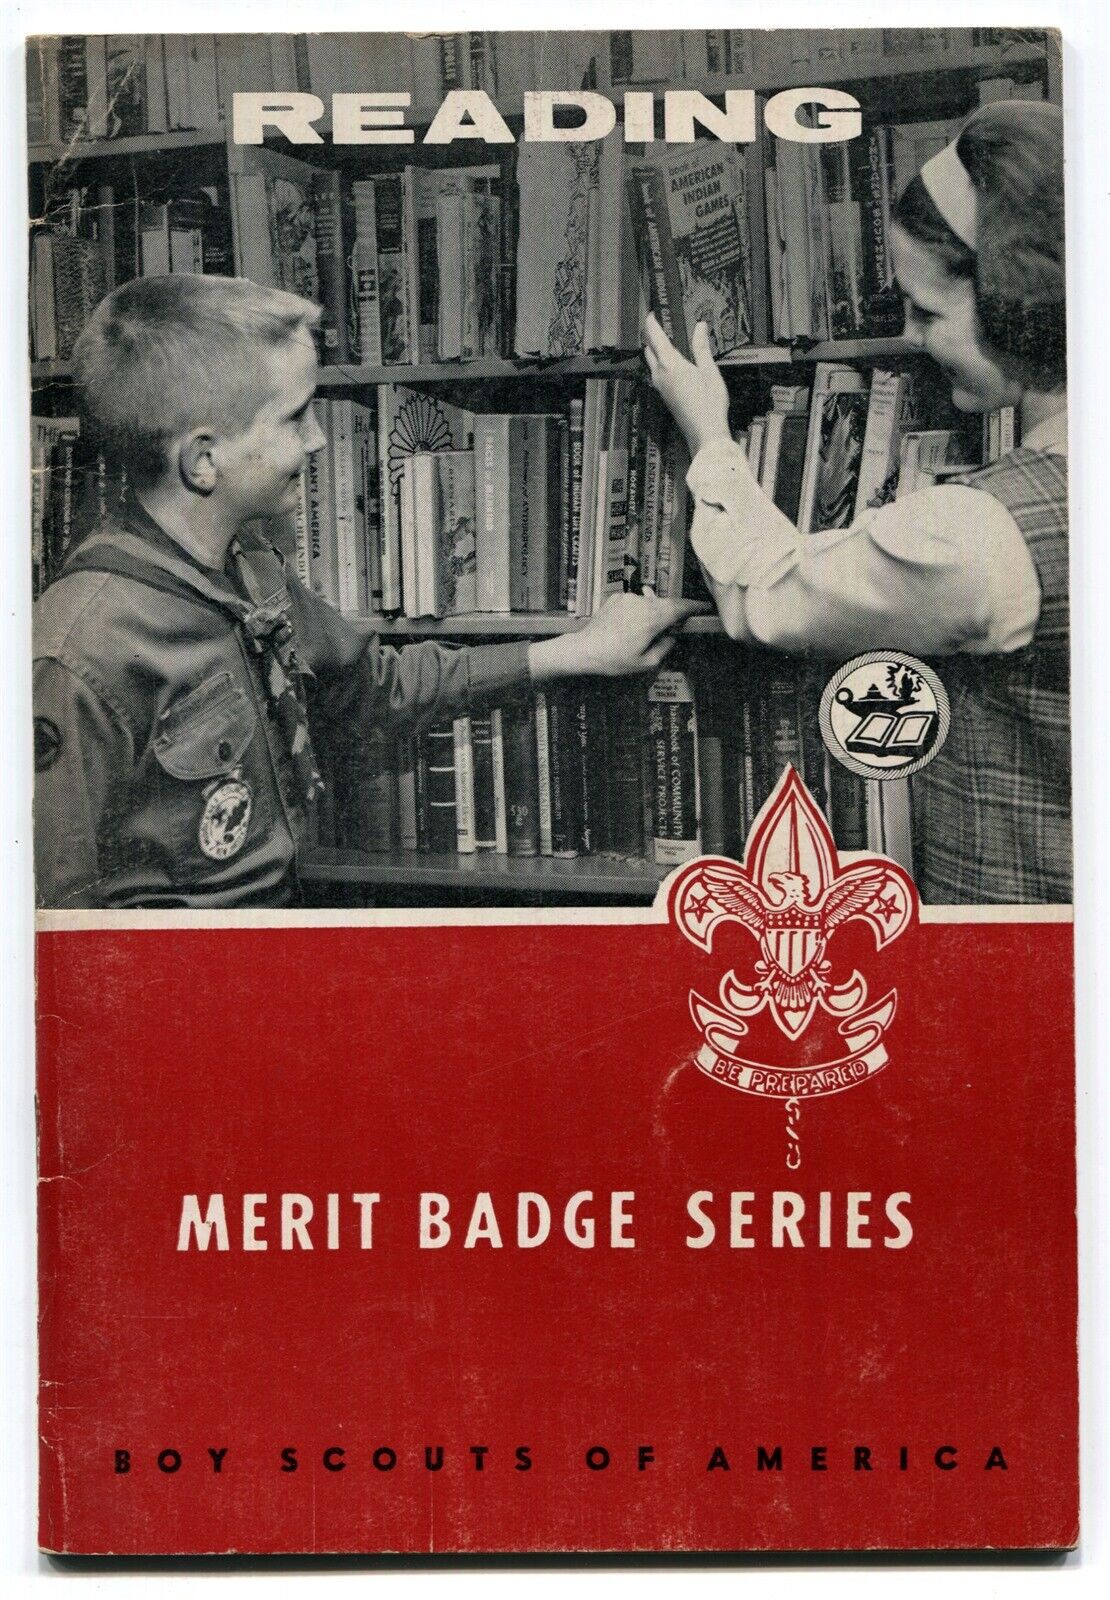 BSA Merit Badge Book: READING c.1965 p.1965 -3393 15M765-